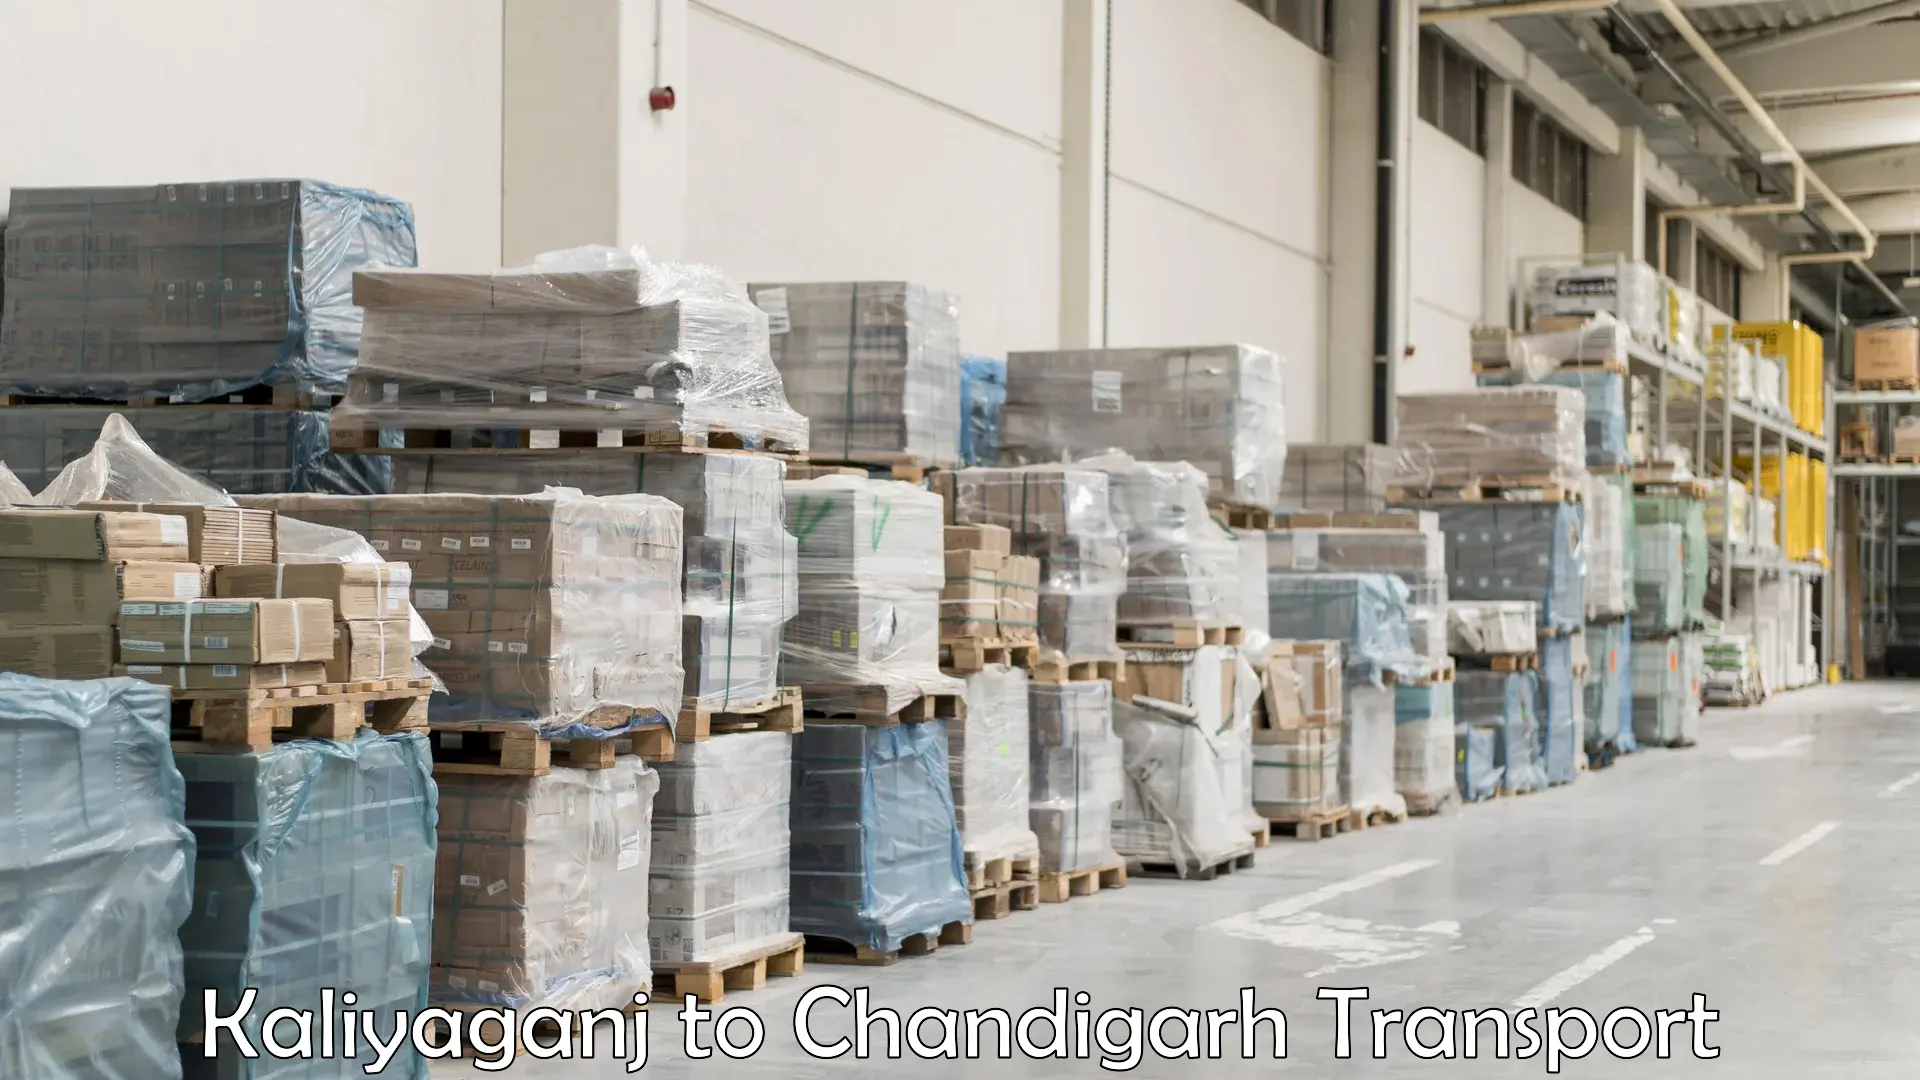 Lorry transport service Kaliyaganj to Chandigarh